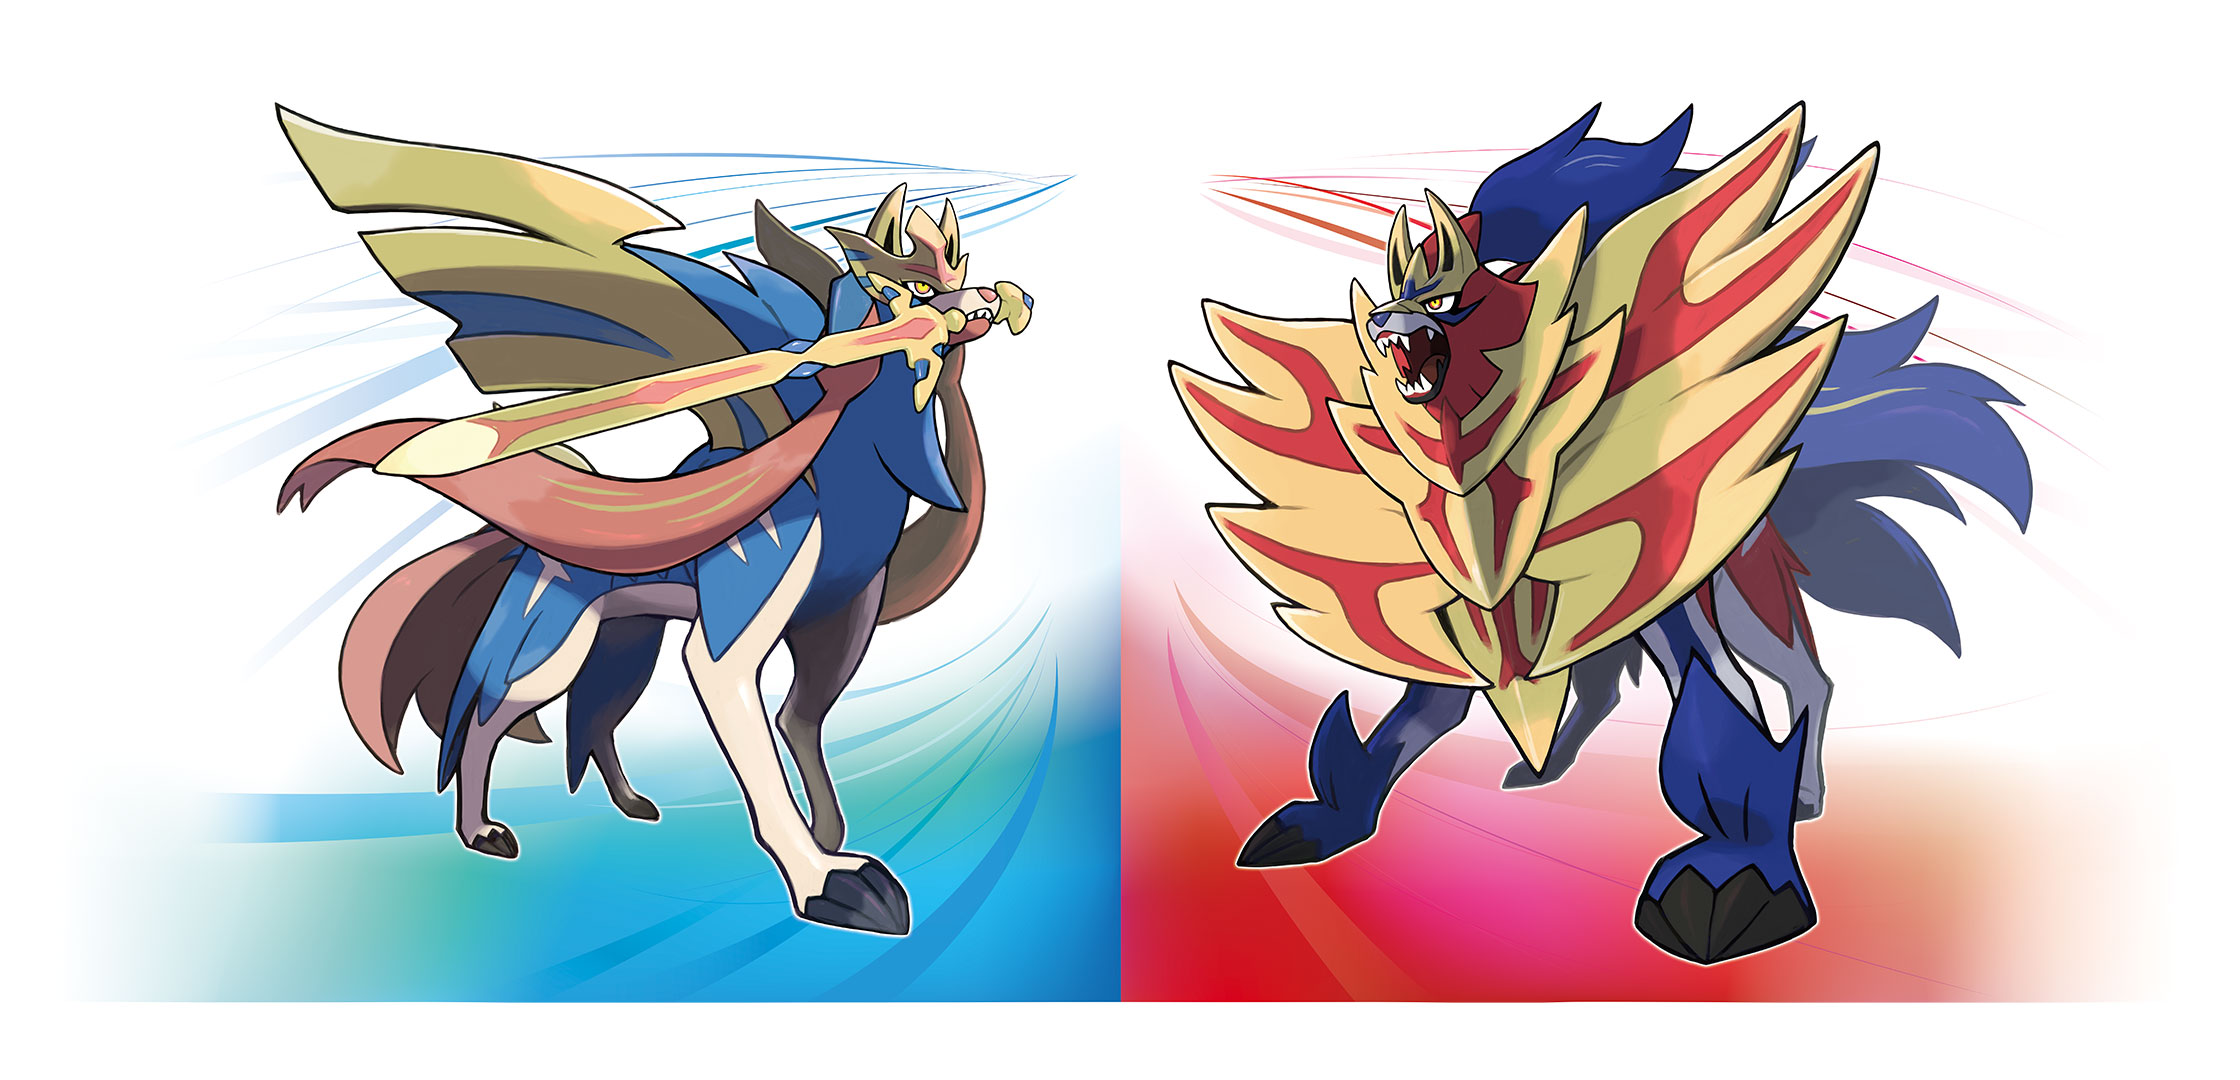 Pokémon Sword And Shield Estes São Os Exclusivos E Lendários Do Jogo 9992